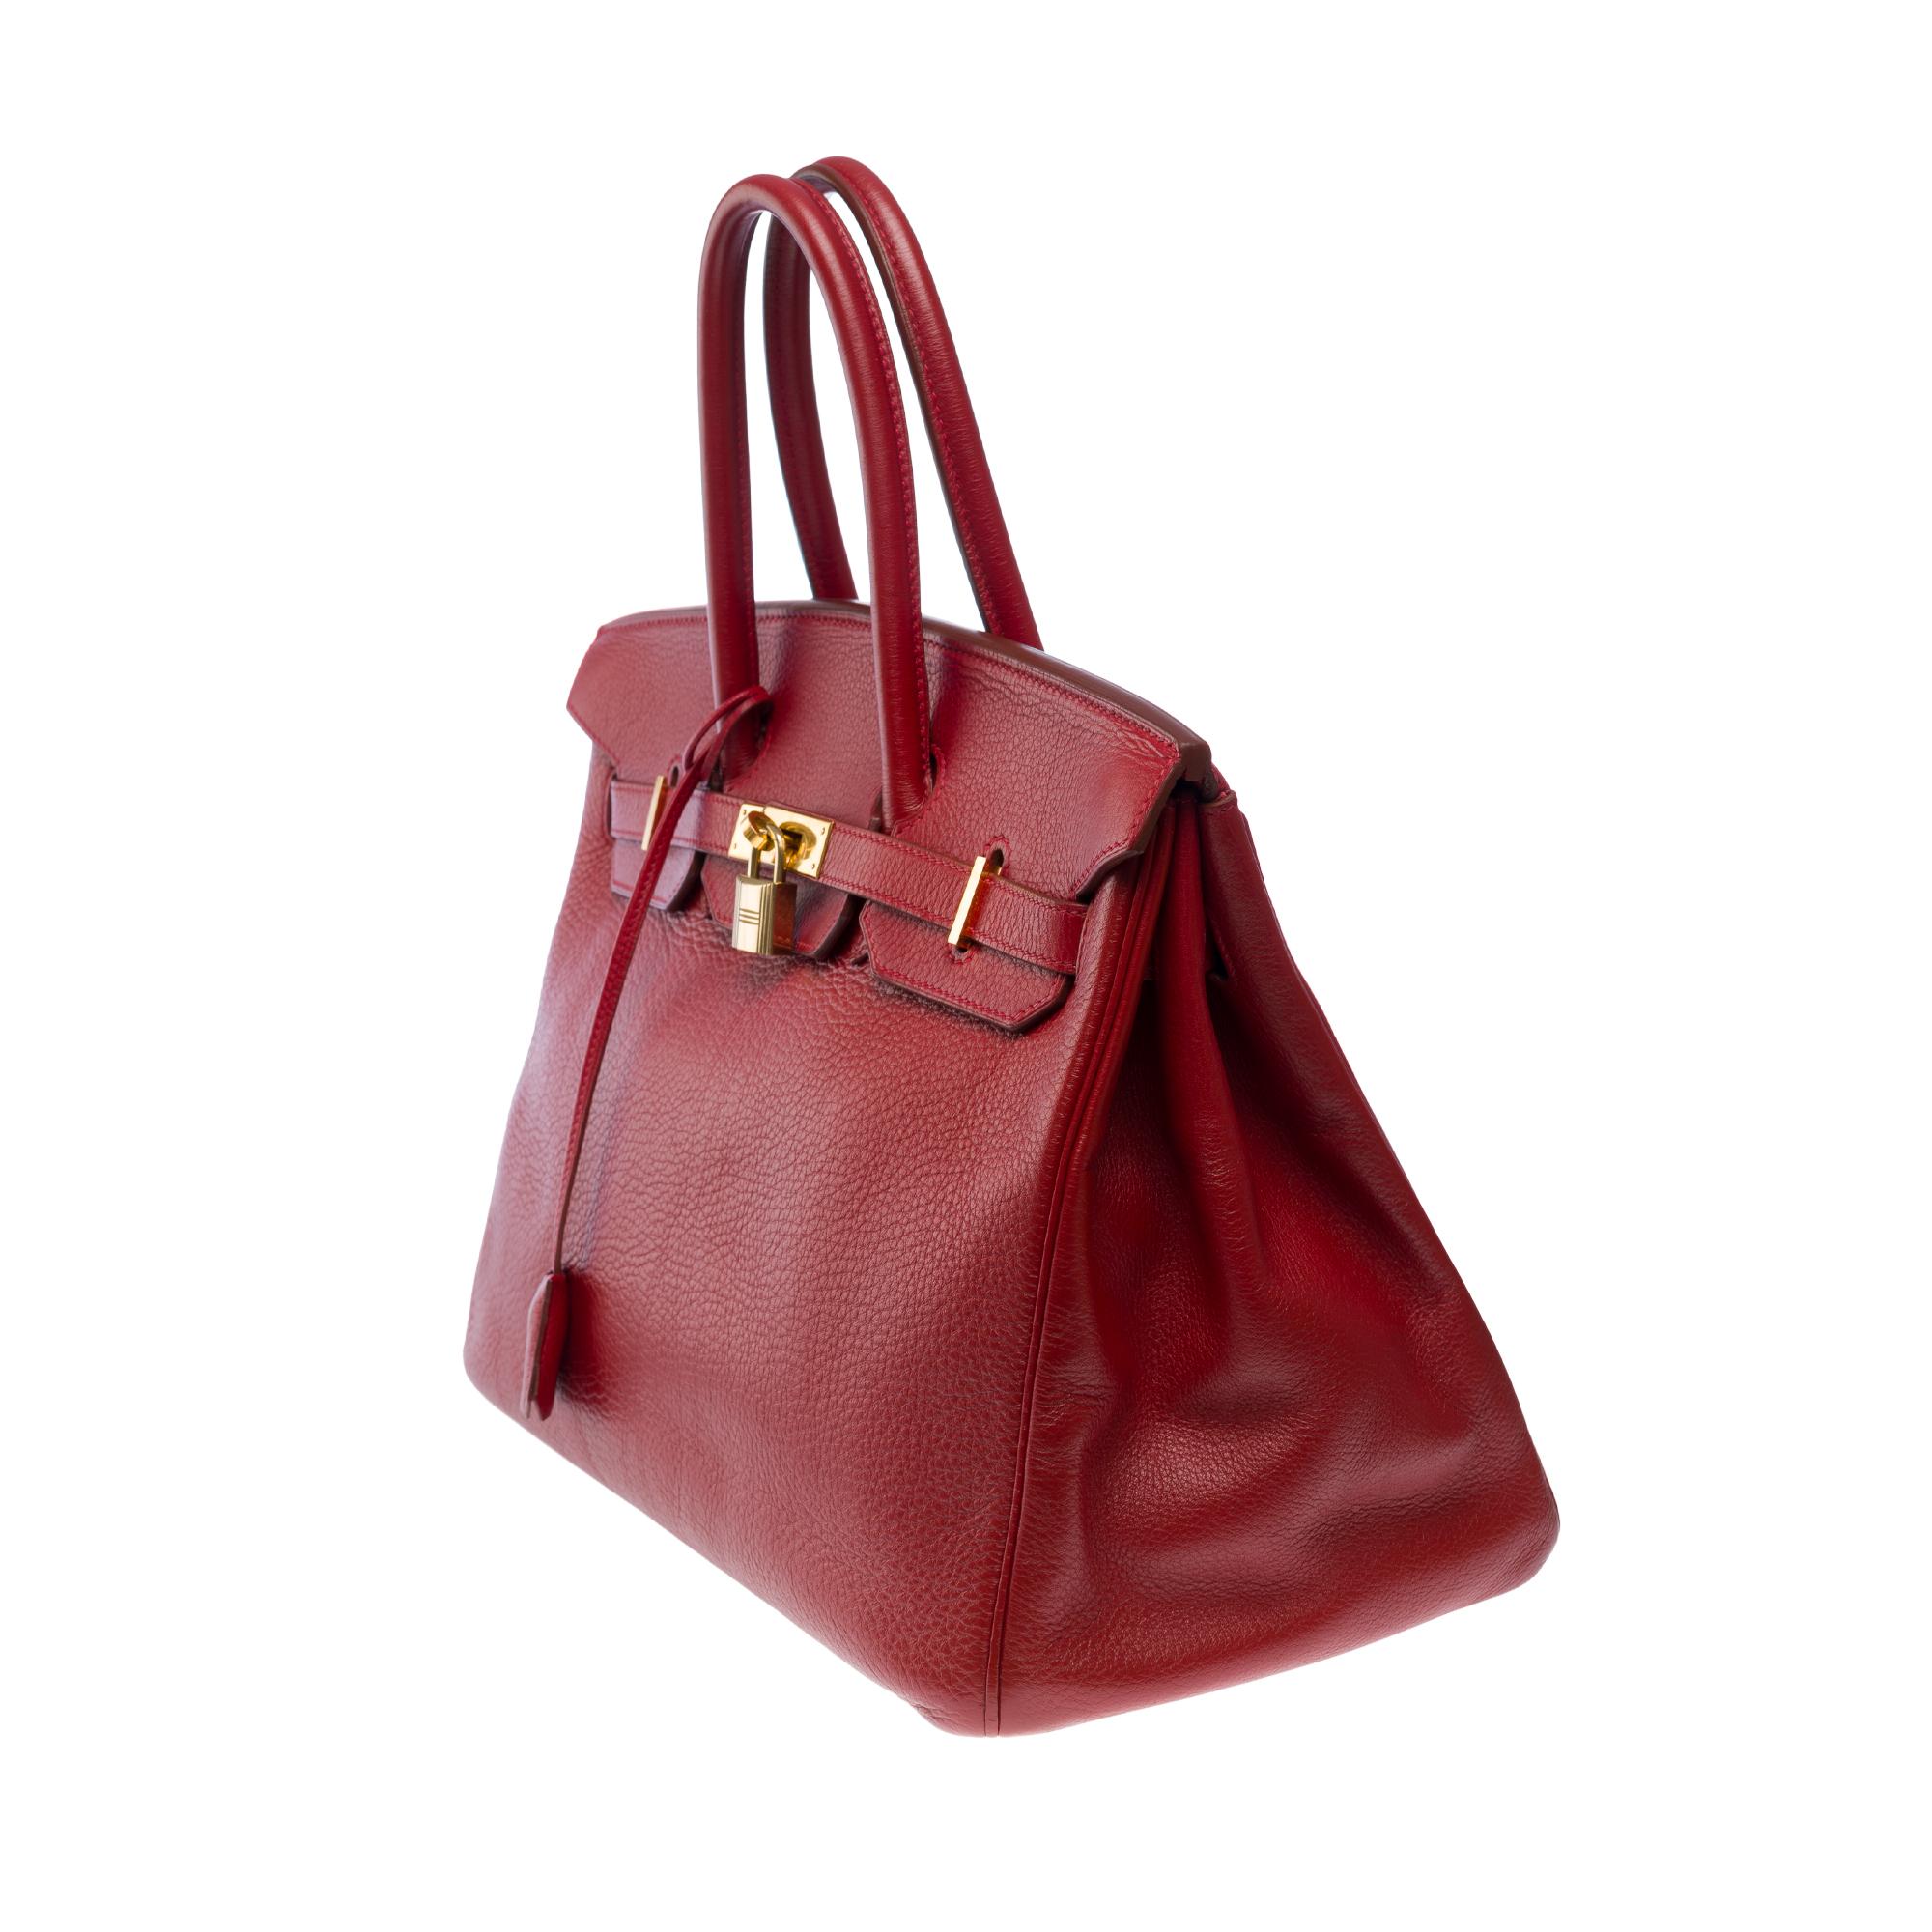 Stunning Hermès Birkin 35 handbag in Rouge Garance Togo leather, GHW In Good Condition For Sale In Paris, IDF